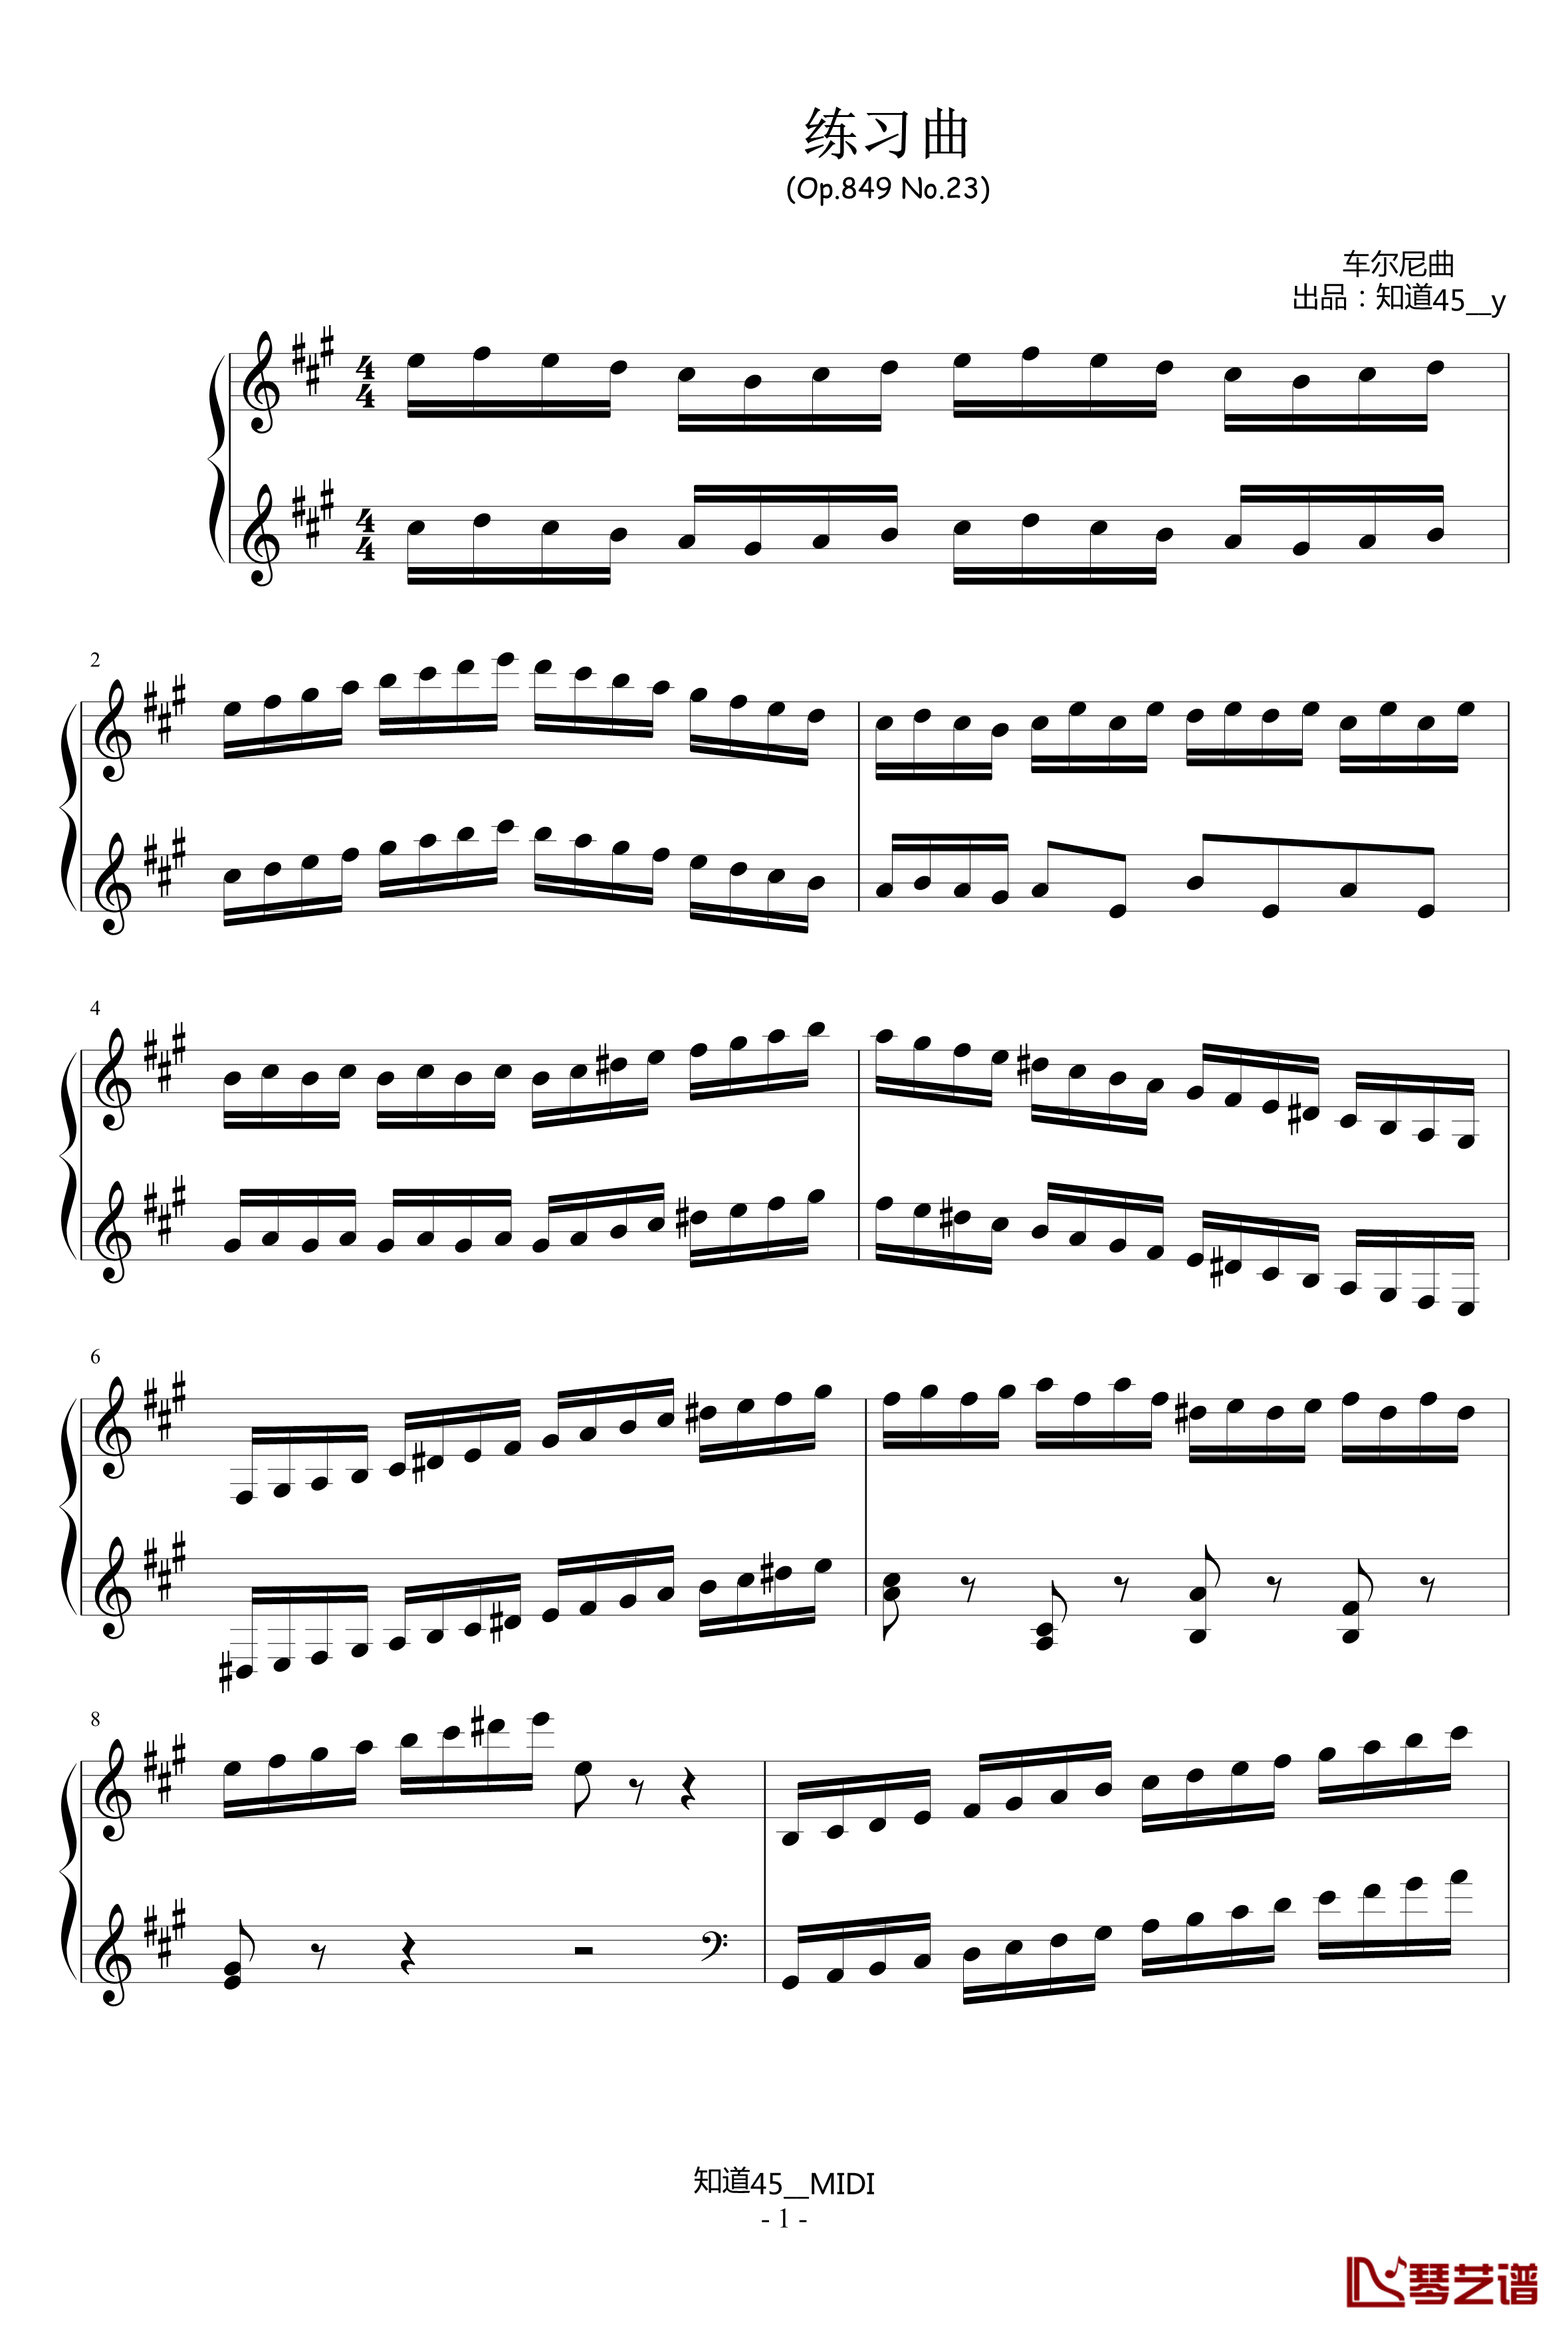 练习曲钢琴谱-Op.849 No.23-儿童歌曲